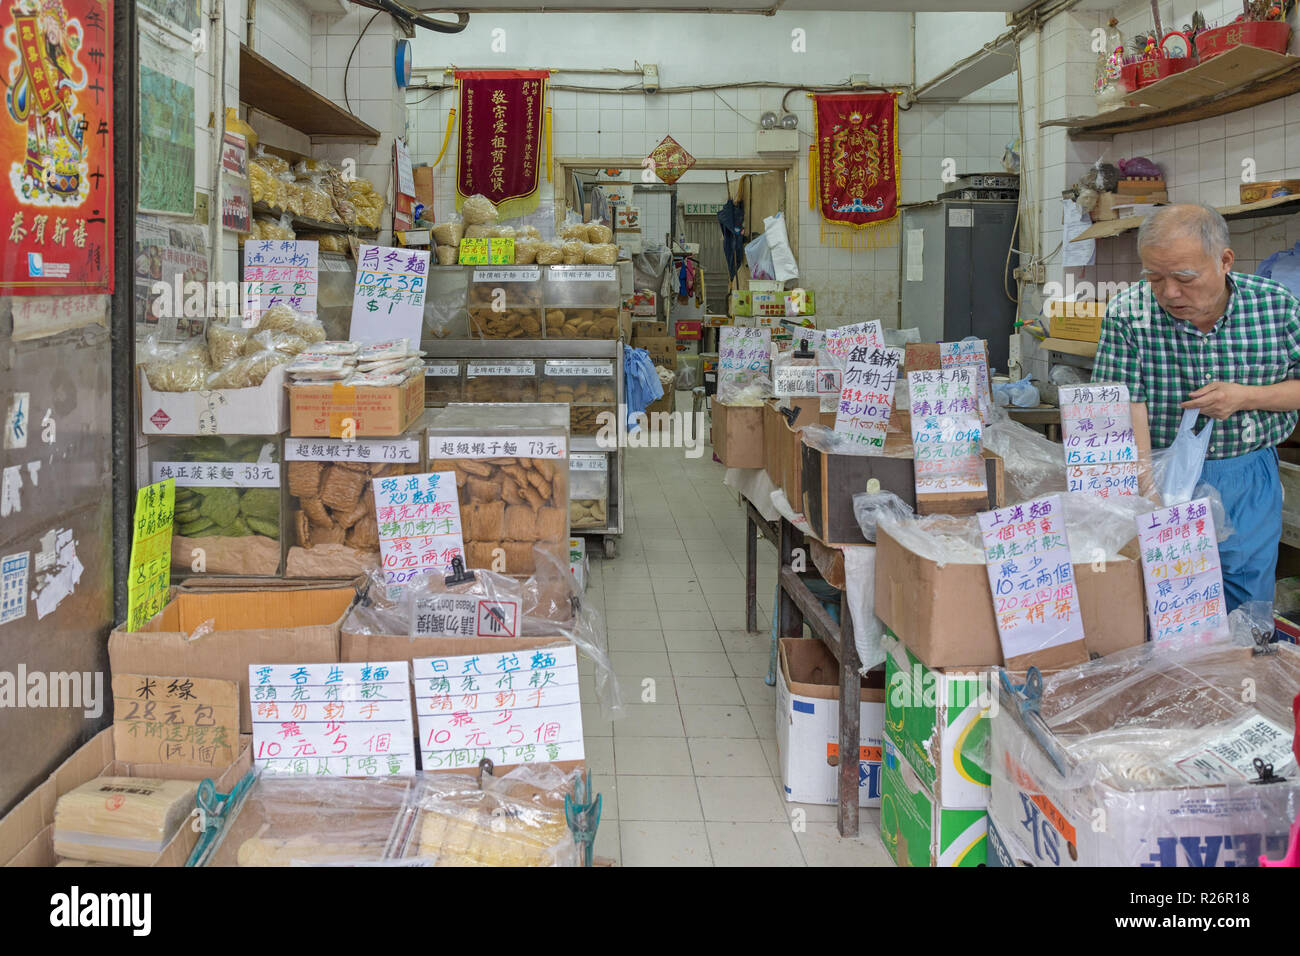 KOWLOON, HONG KONG - APRIL 22, 2017:  Traditional Chinese Ingredients Shop in Kowloon, Hong Kong. Stock Photo